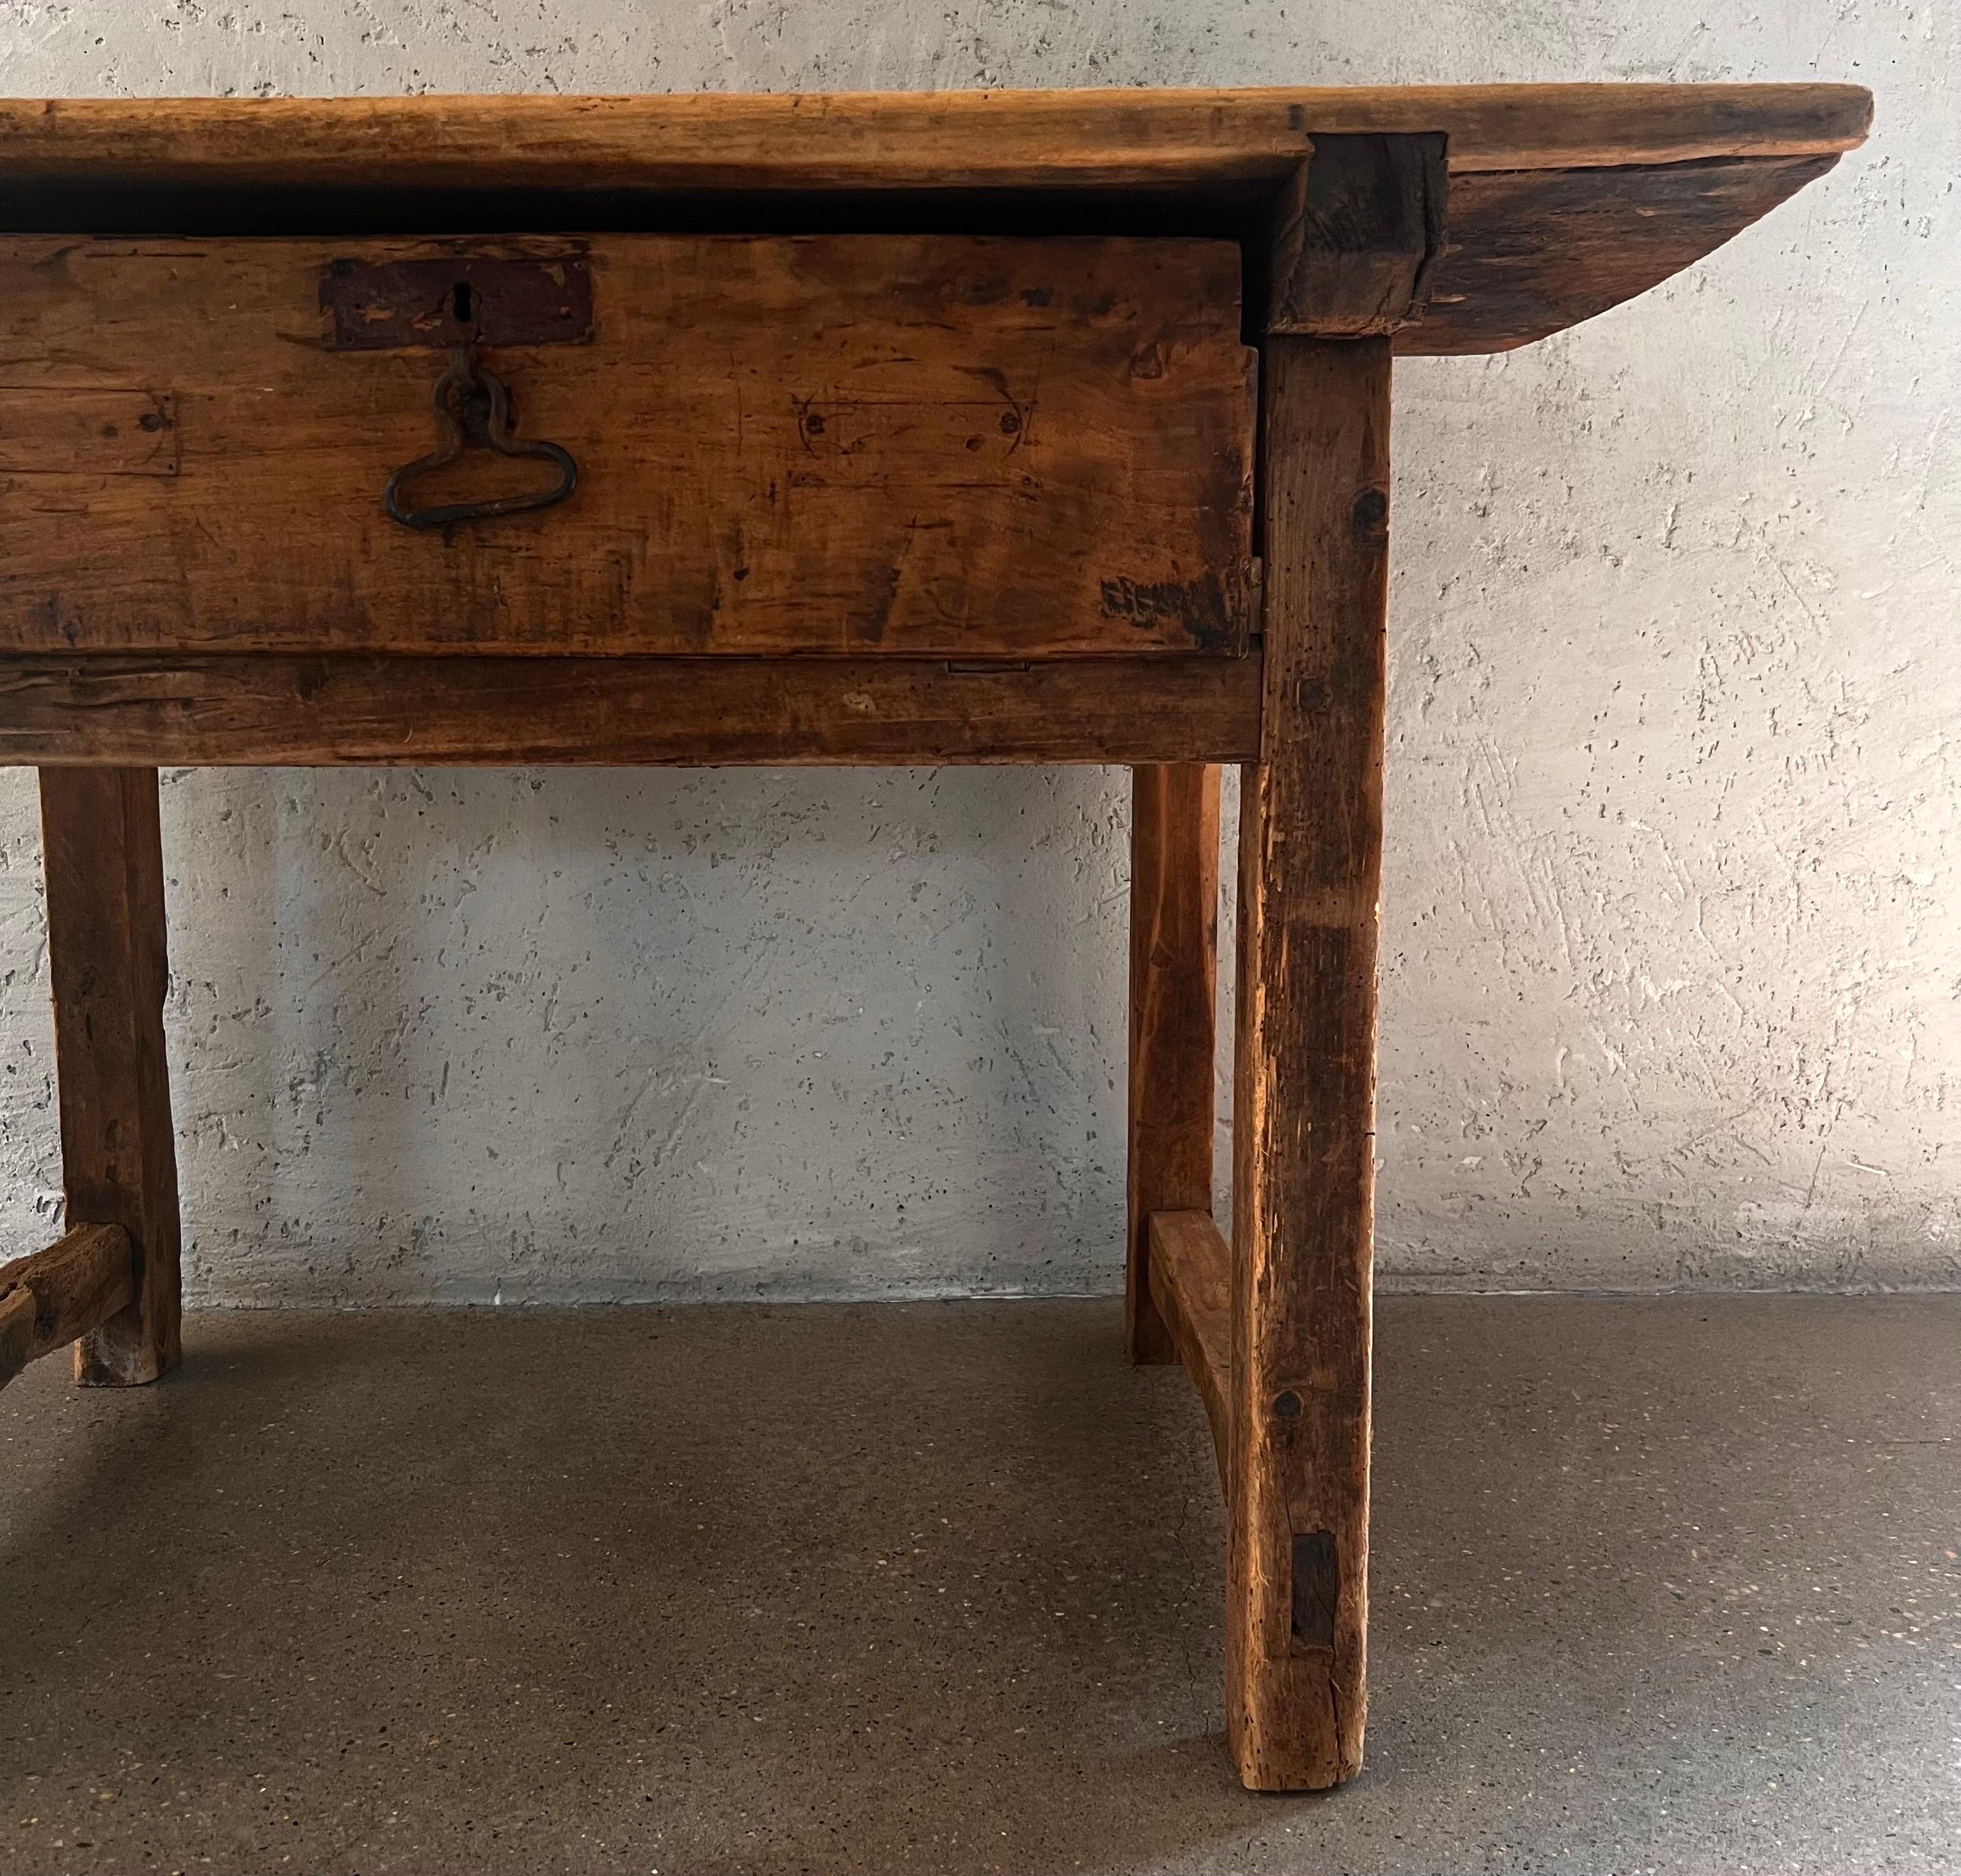 Dies ist ein authentischer spanischer Tisch aus dem 17. Jahrhundert. Er hat eine wunderschöne Patina, ist strukturell gesund und voller Leben.  Jeder Zentimeter ist so, wie er seit Jahrhunderten war. 